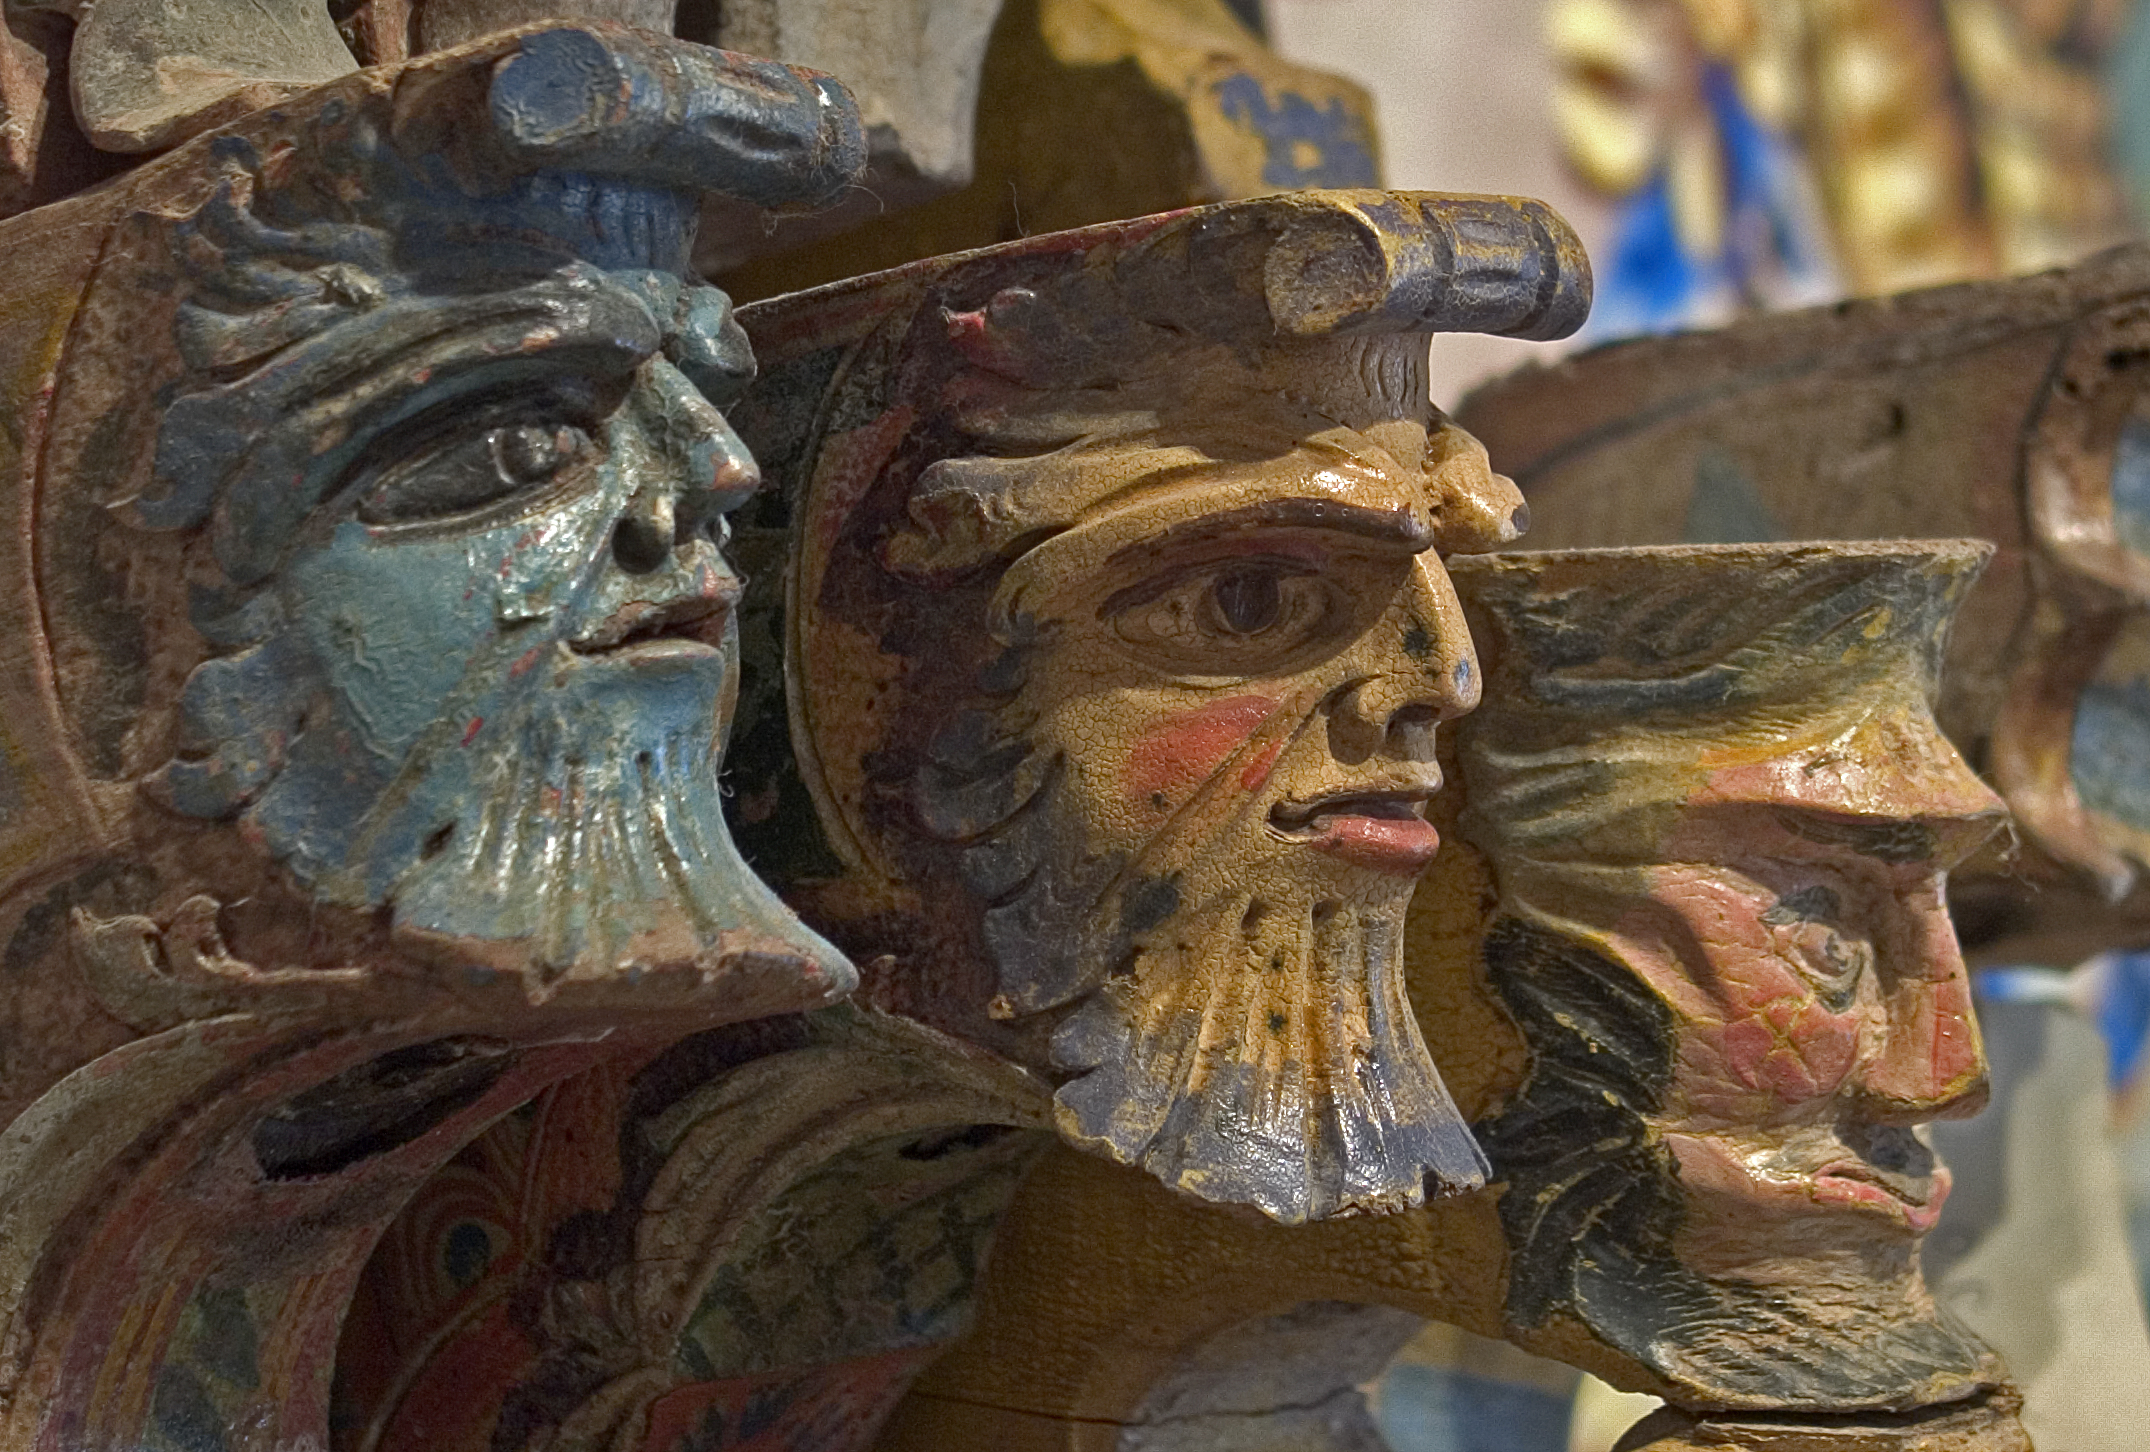 Pedalino, R., Mensole di carretto – particolare mascheroni, scultura in altorilievo, prima metà XX secolo, 2018, fotografia digitale